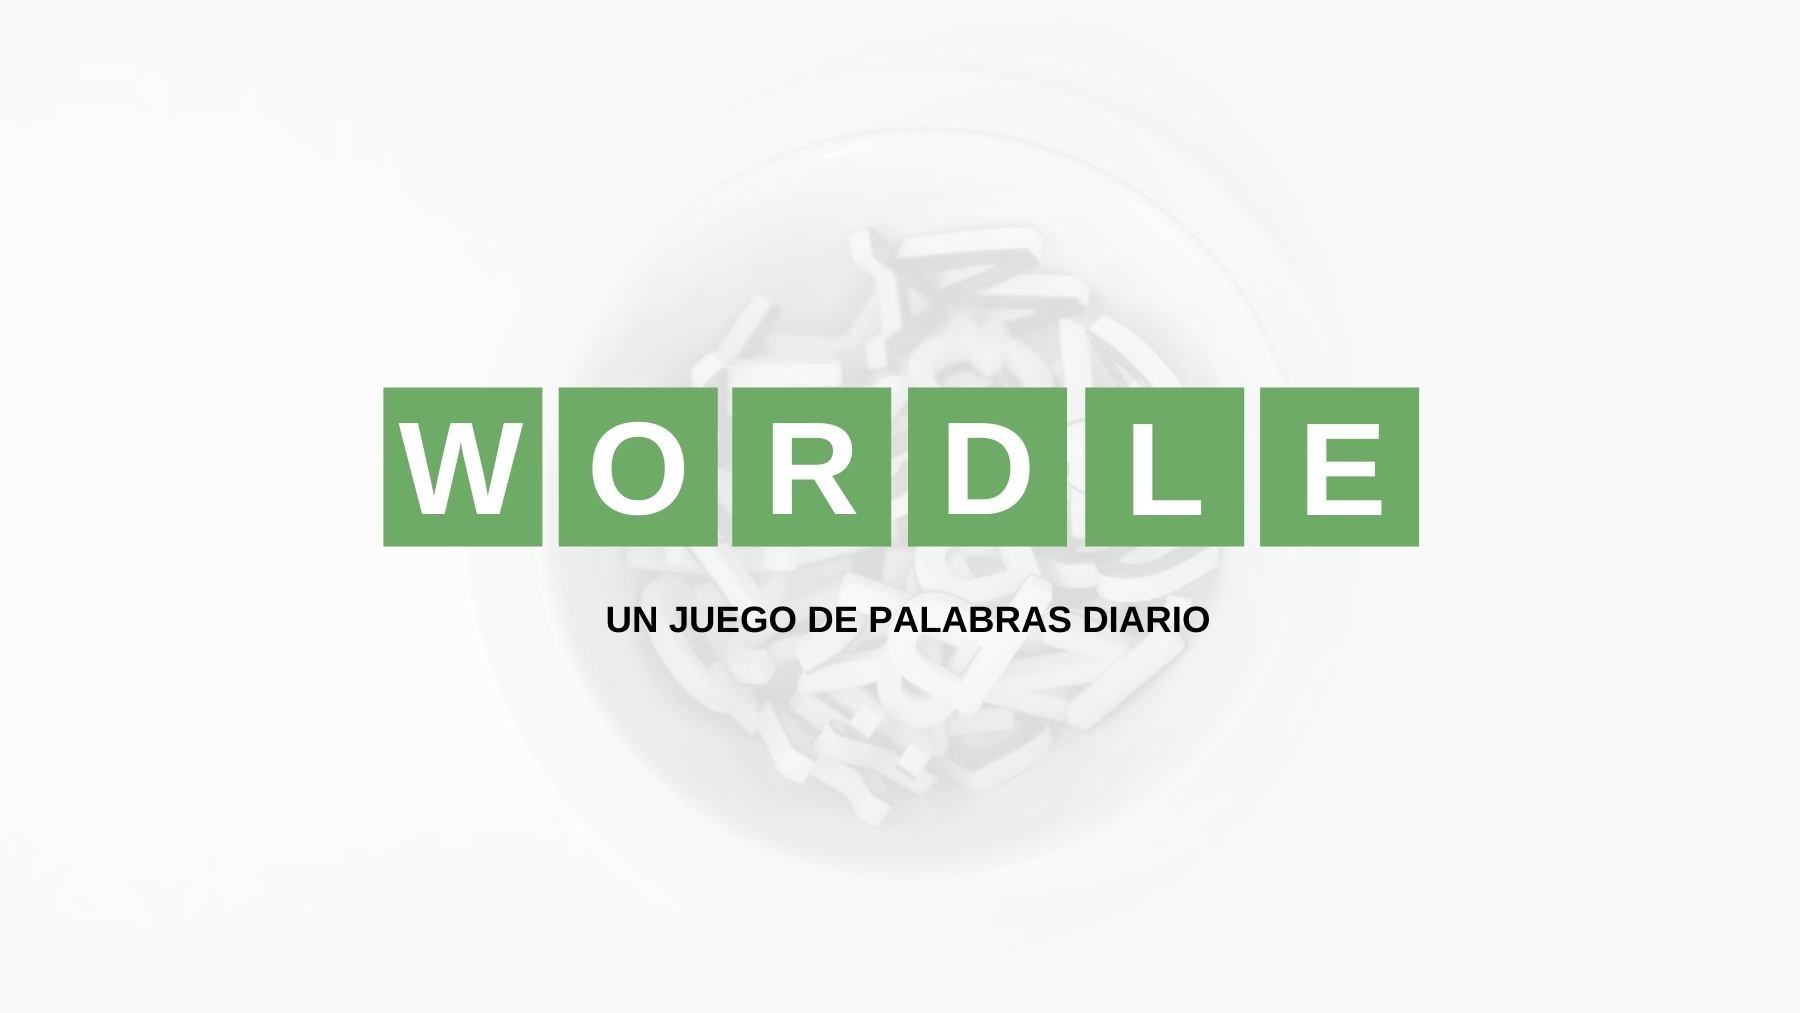 Solución y pistas palabra Wordle español, científico y con tildes hoy, sábado 3 de septiembre de 2022